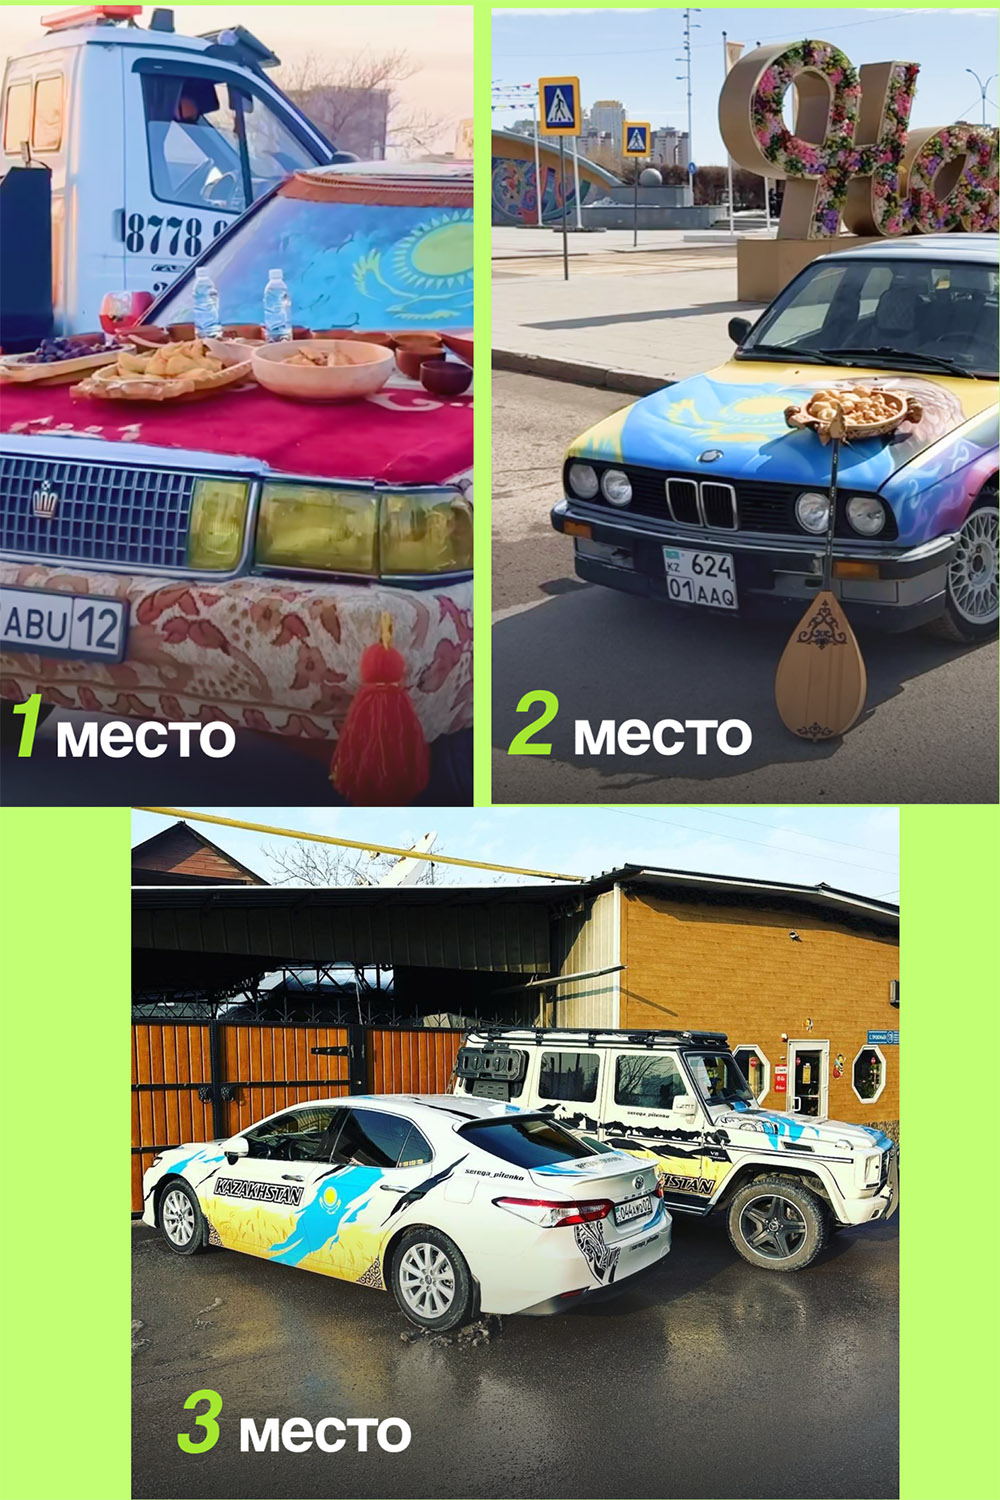 Машины в национальном стиле украсили города Казахстана